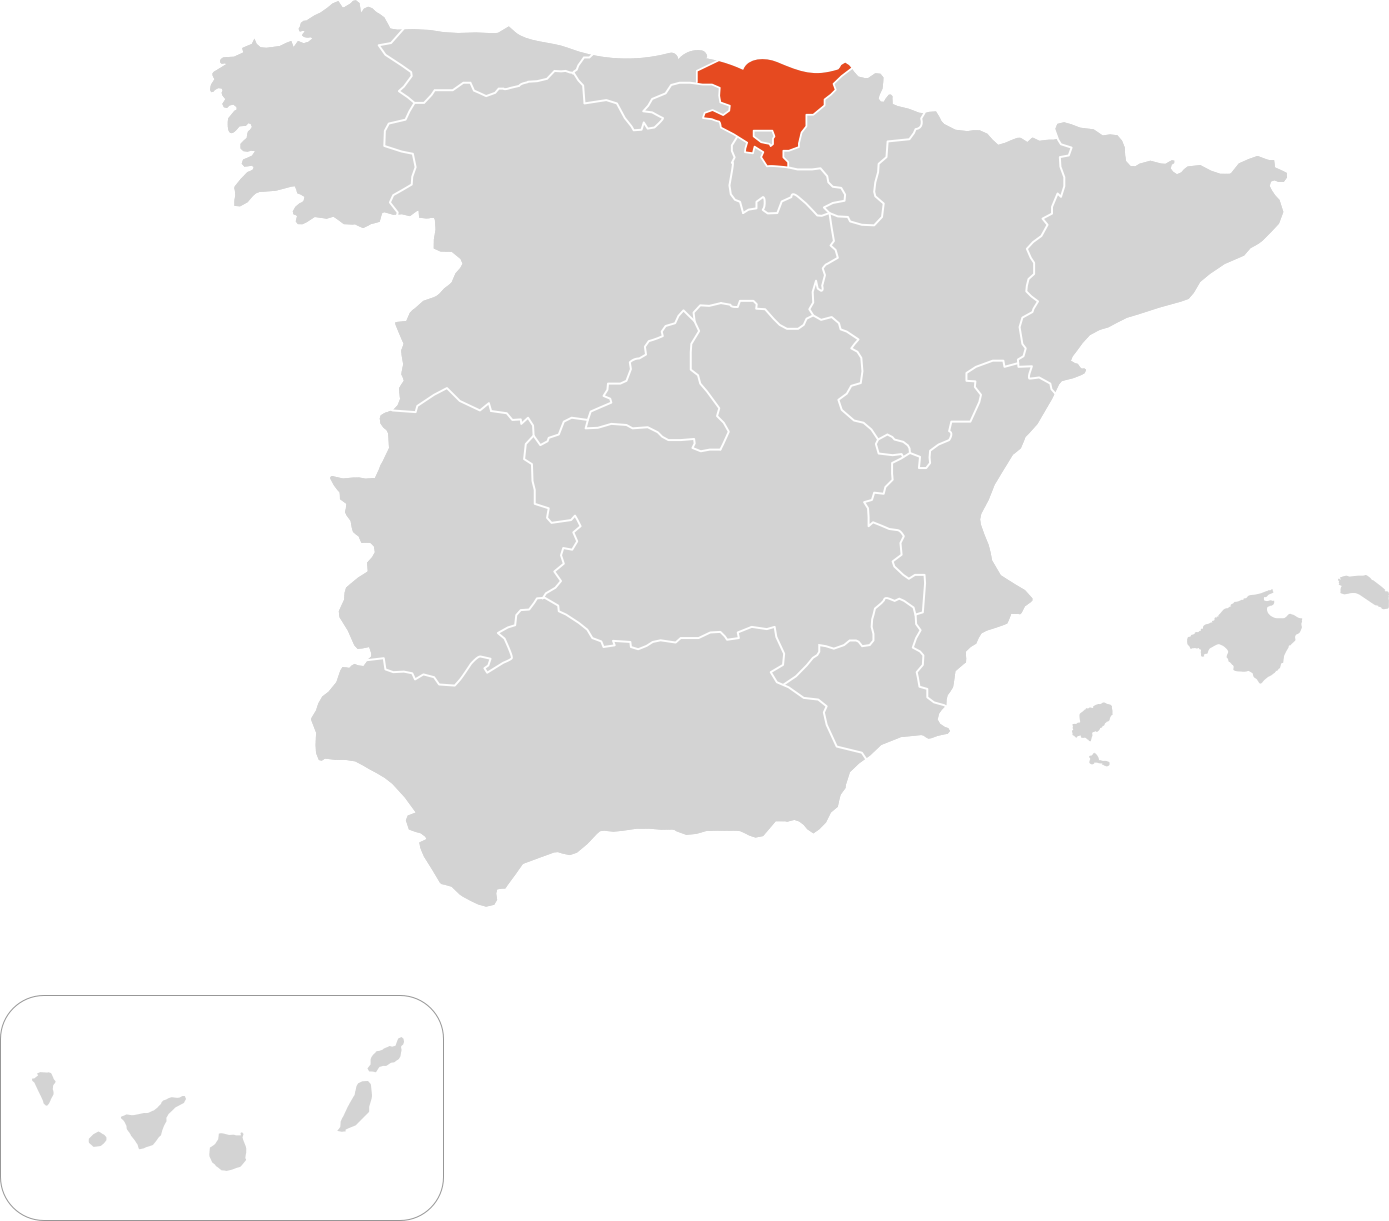 País Vasco